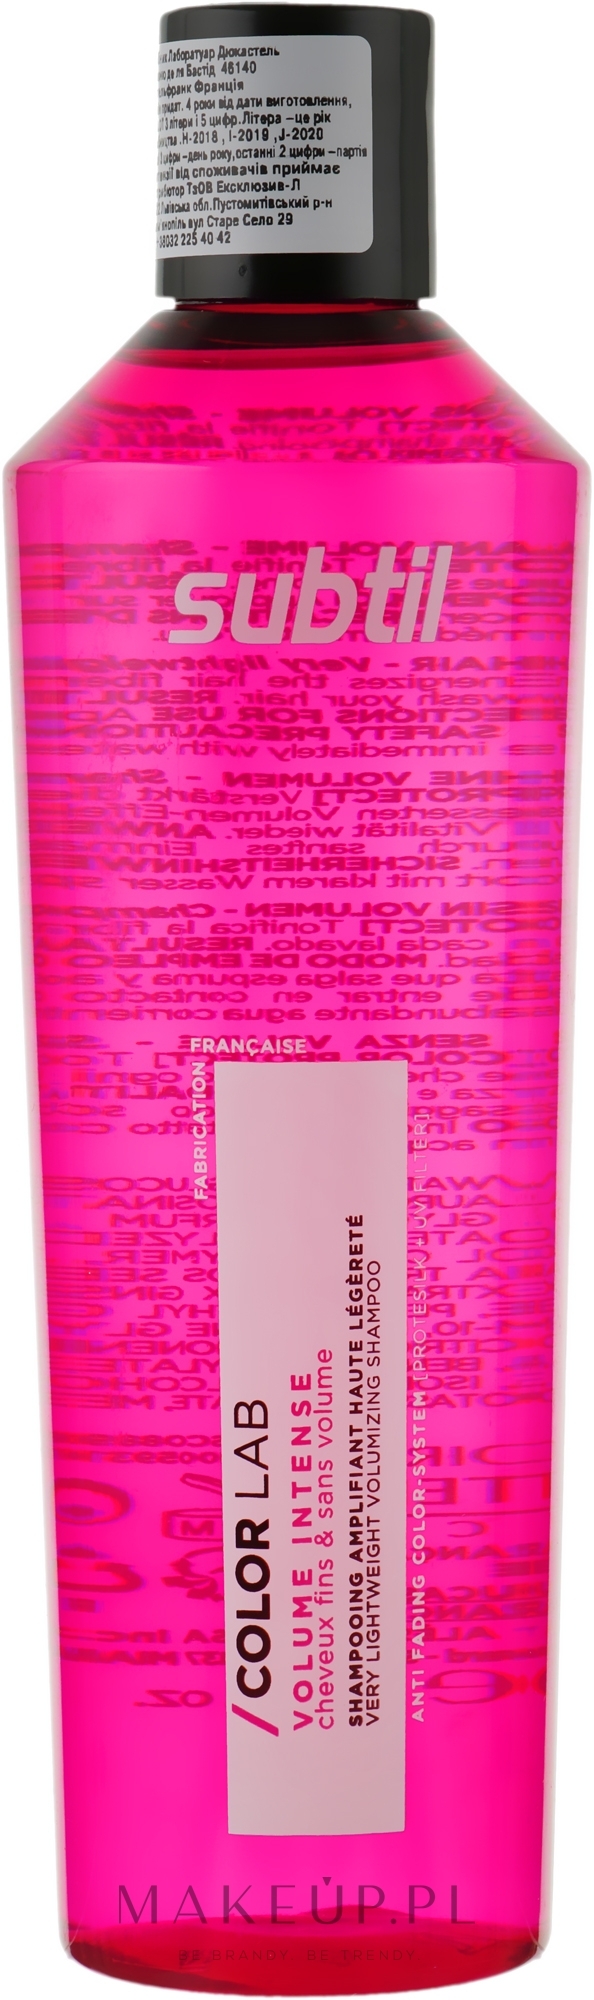 Ultralekki szampon zwiększający objętość włosów cienkich - Laboratoire Ducastel Subtil Color Lab Volume Intense Very Lightweight Volumizing Shampoo — Zdjęcie 300 ml